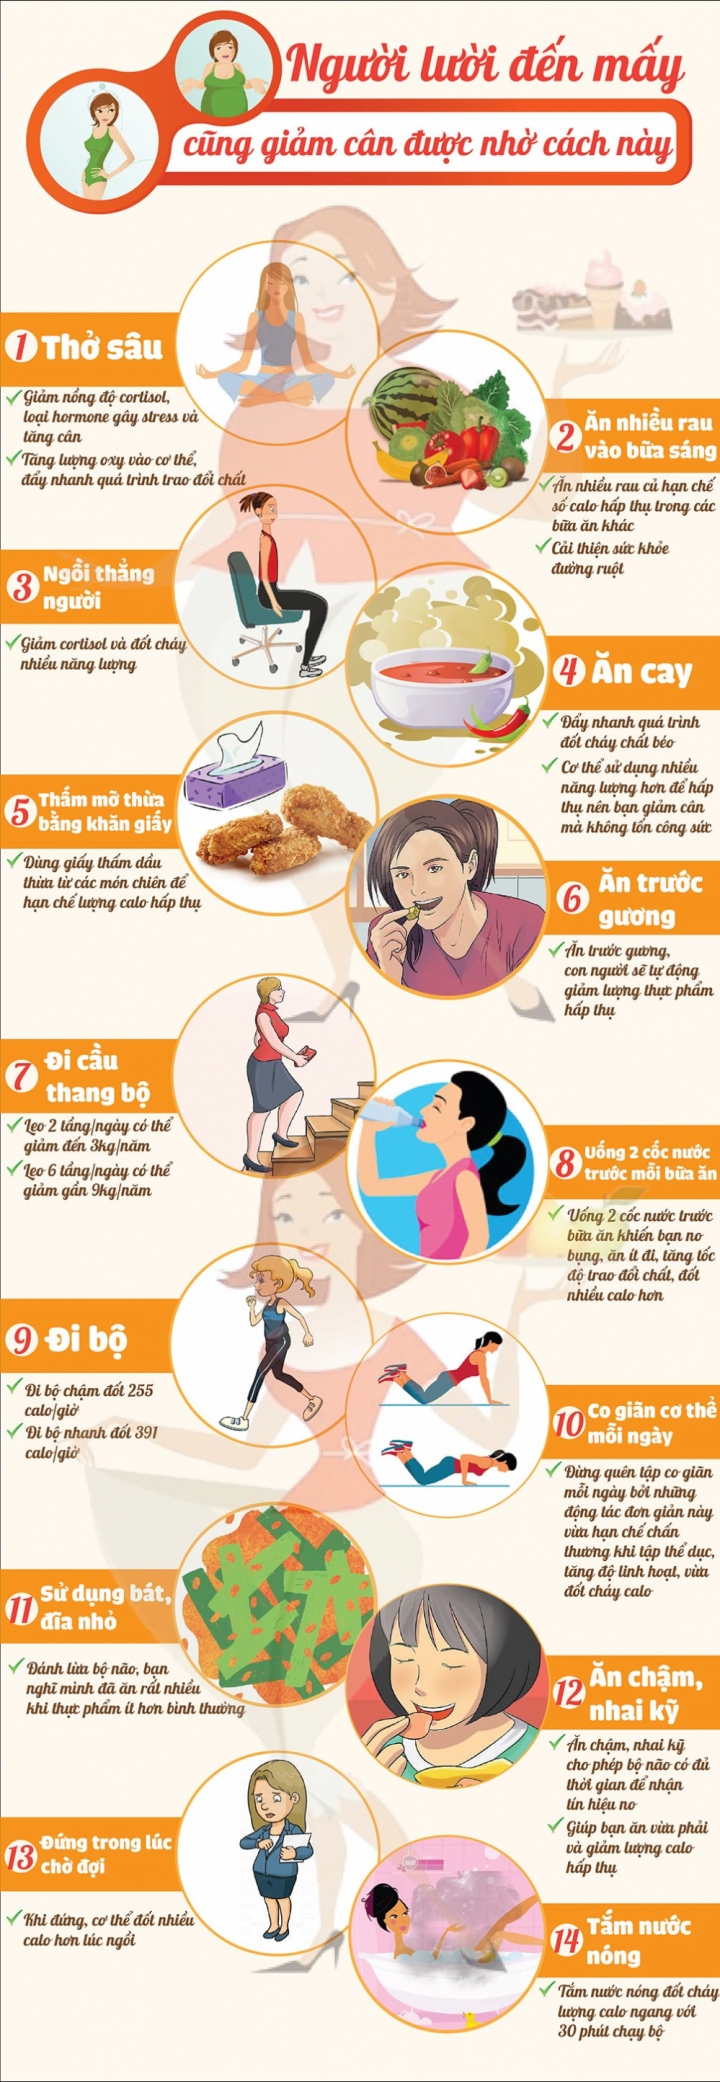 Infographic: Cứu cánh giúp các nàng lười giảm cân hiệu quả tối đa